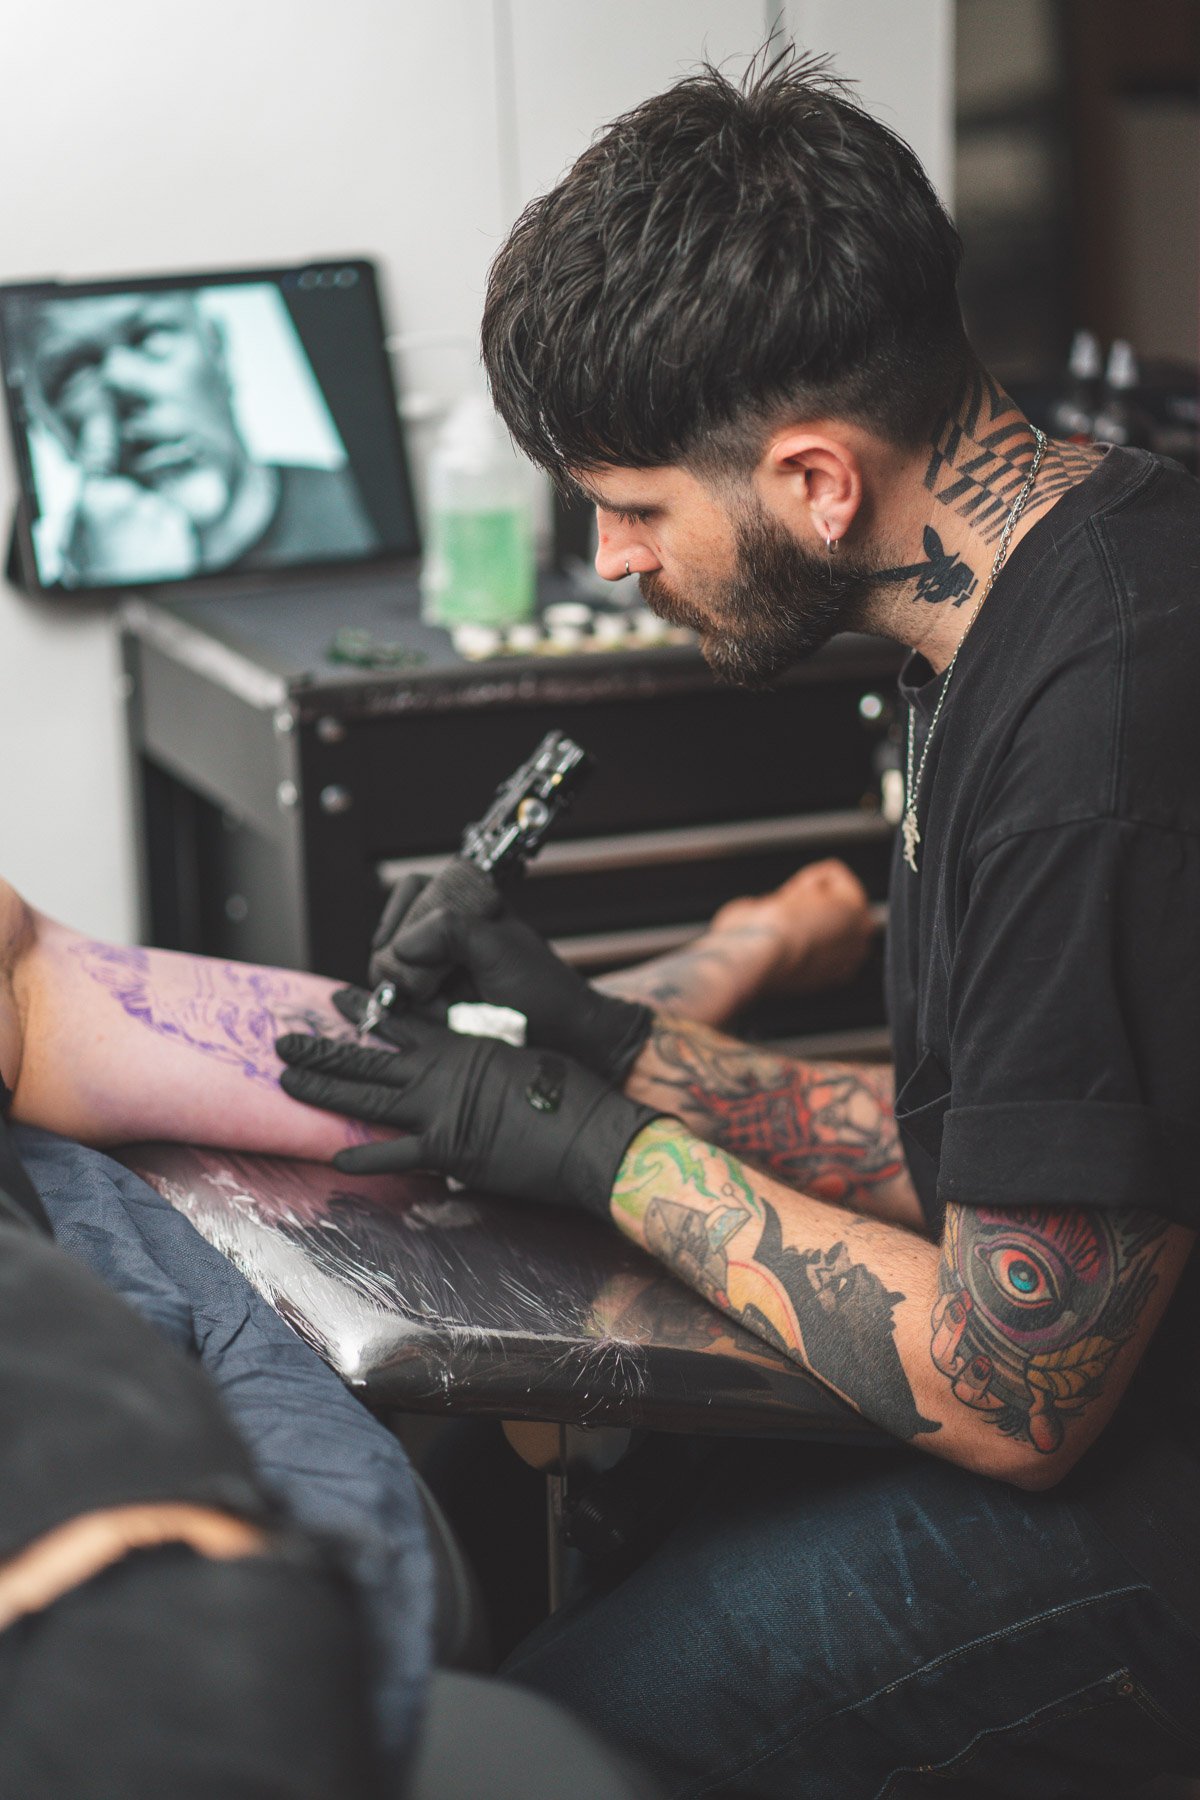 Heart for Art Tattoo Studio - Manchester Tattoo - Tattoo Artists